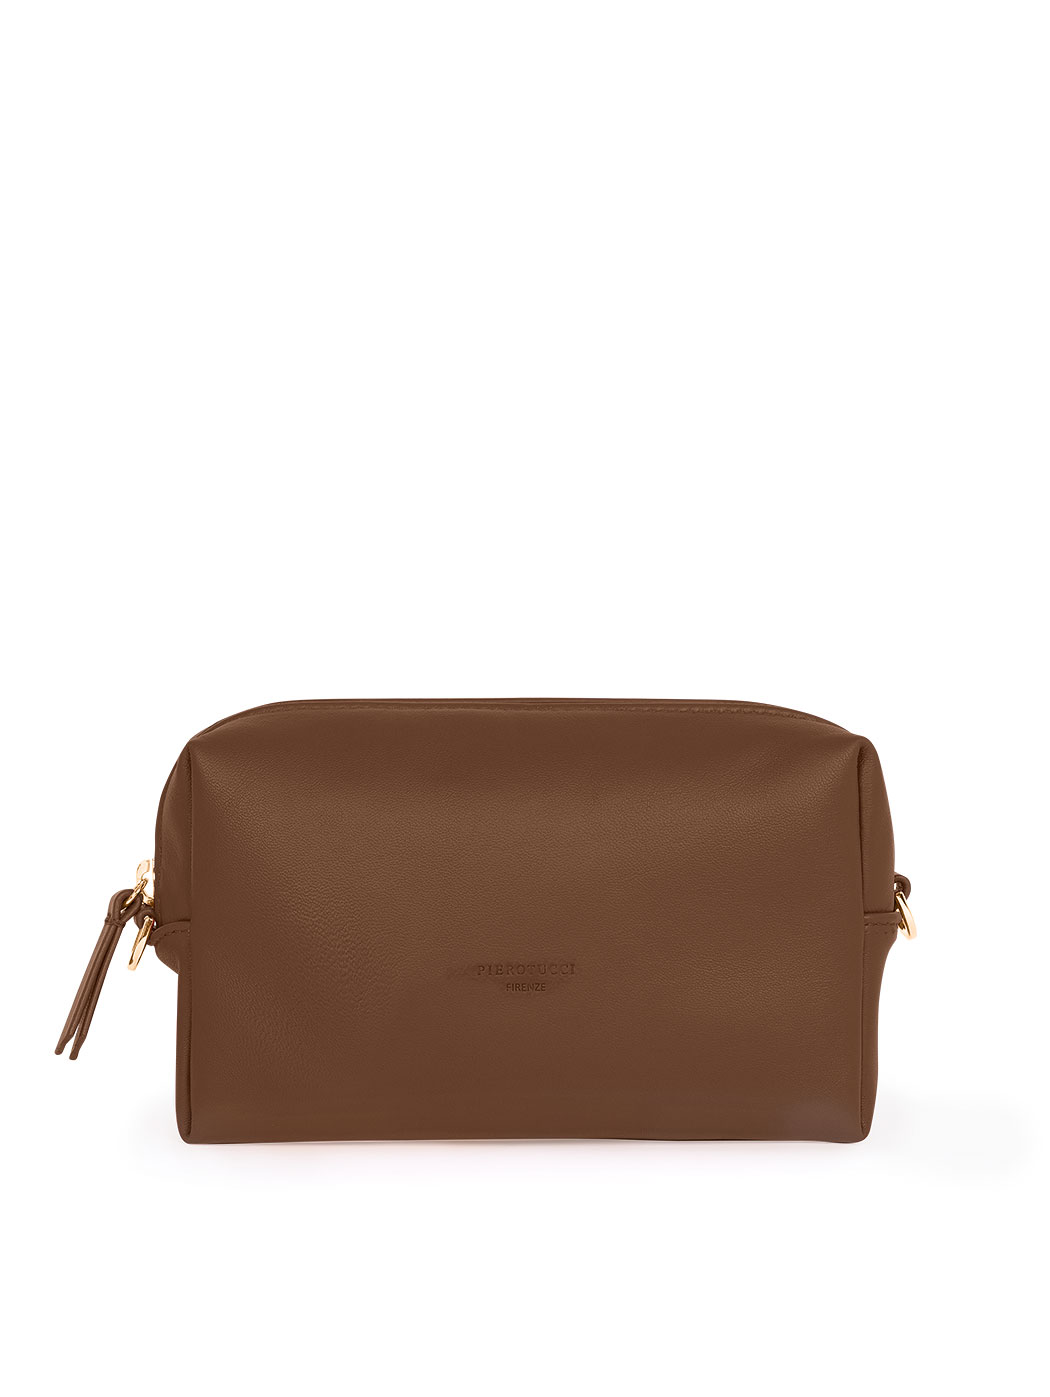 Прямоугольная сумочка с регулируемым ремнем темно - коричневого цвета